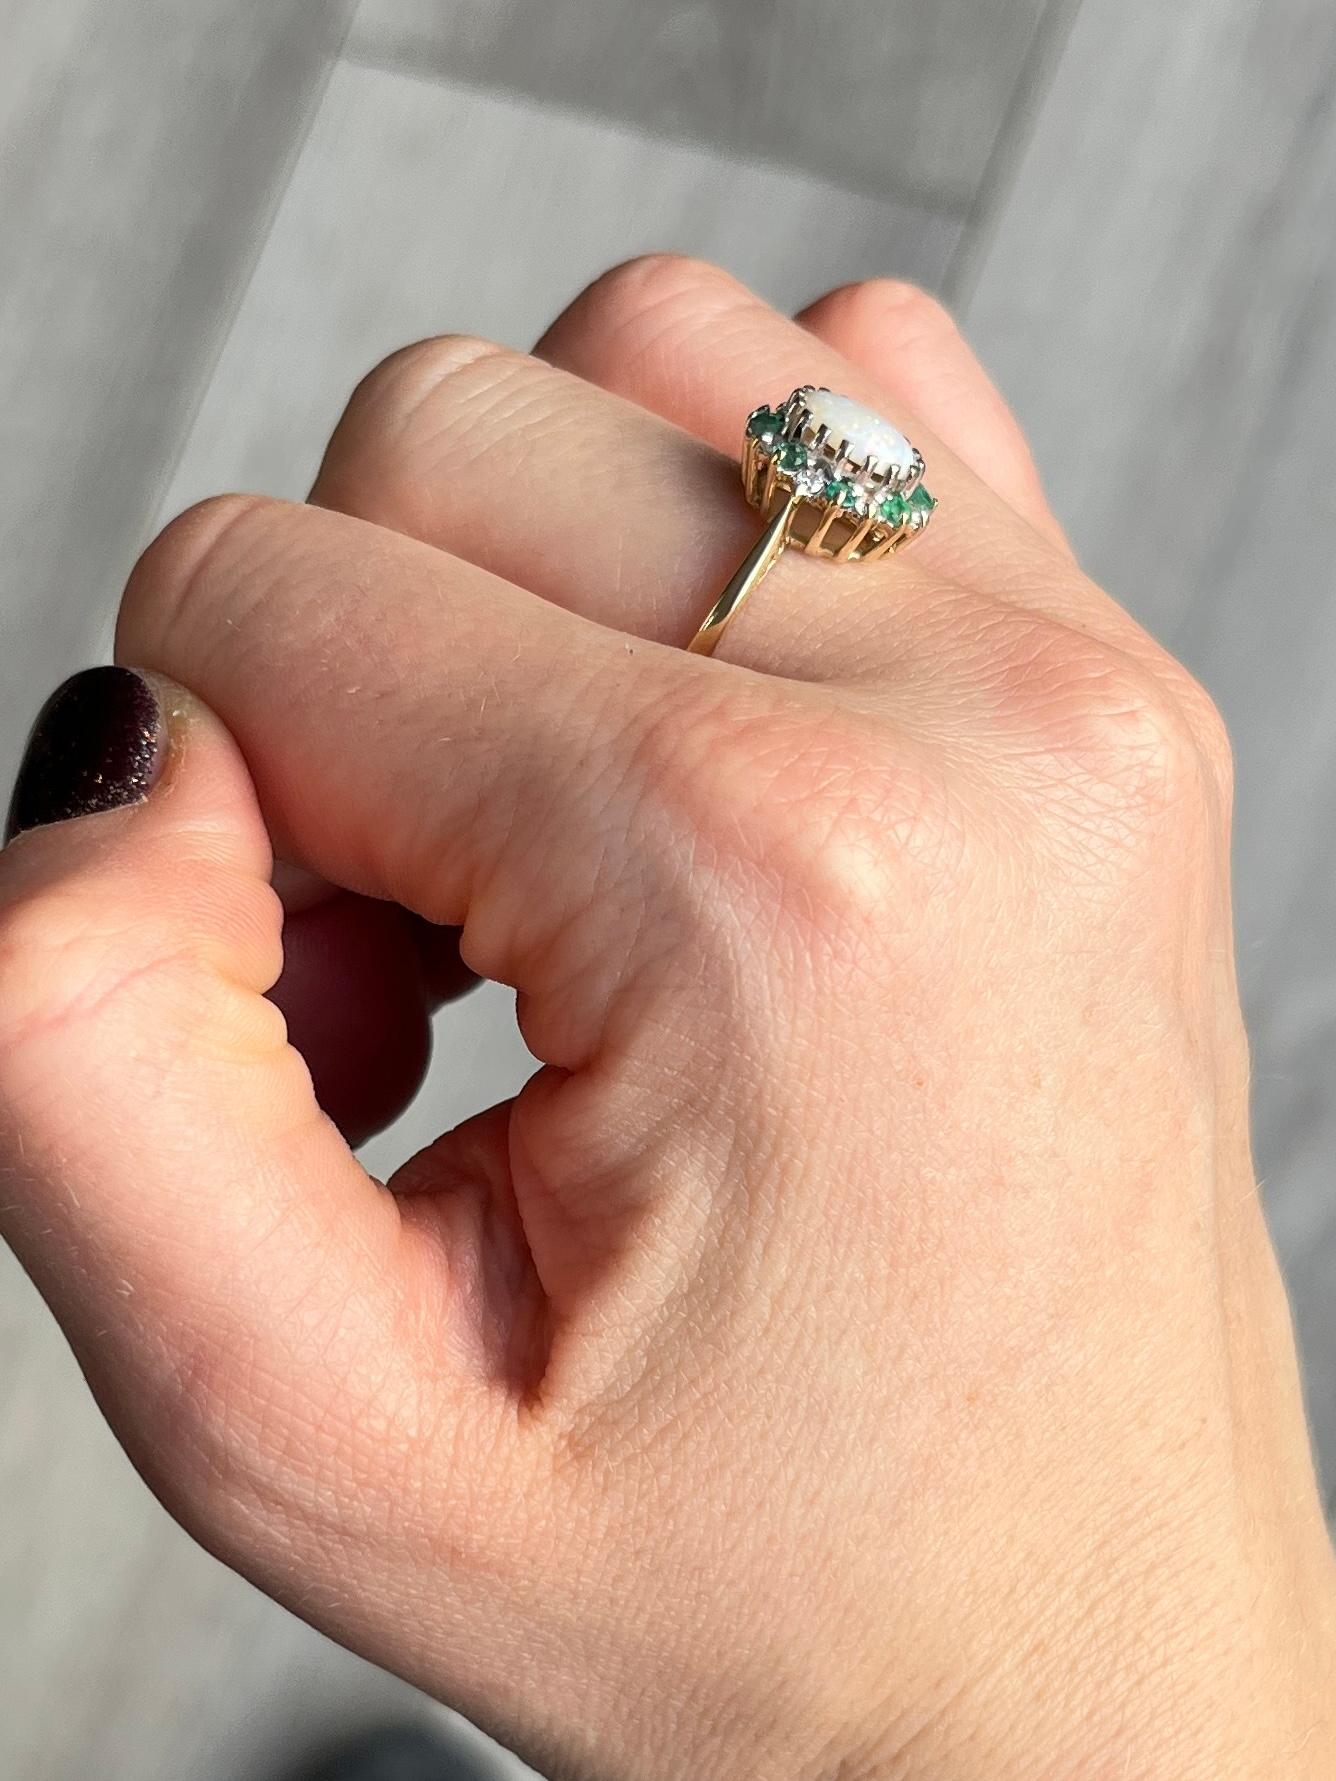 Dieser prächtige Opal wird von einem Halo aus abwechselnden Diamanten und Smaragden umgeben. Der Diamant hat insgesamt 24 Punkte und der Smaragd insgesamt 24 Punkte. Der Opal ist glatt glänzend mit vielen Farbflecken und misst ca. 1 Karat.